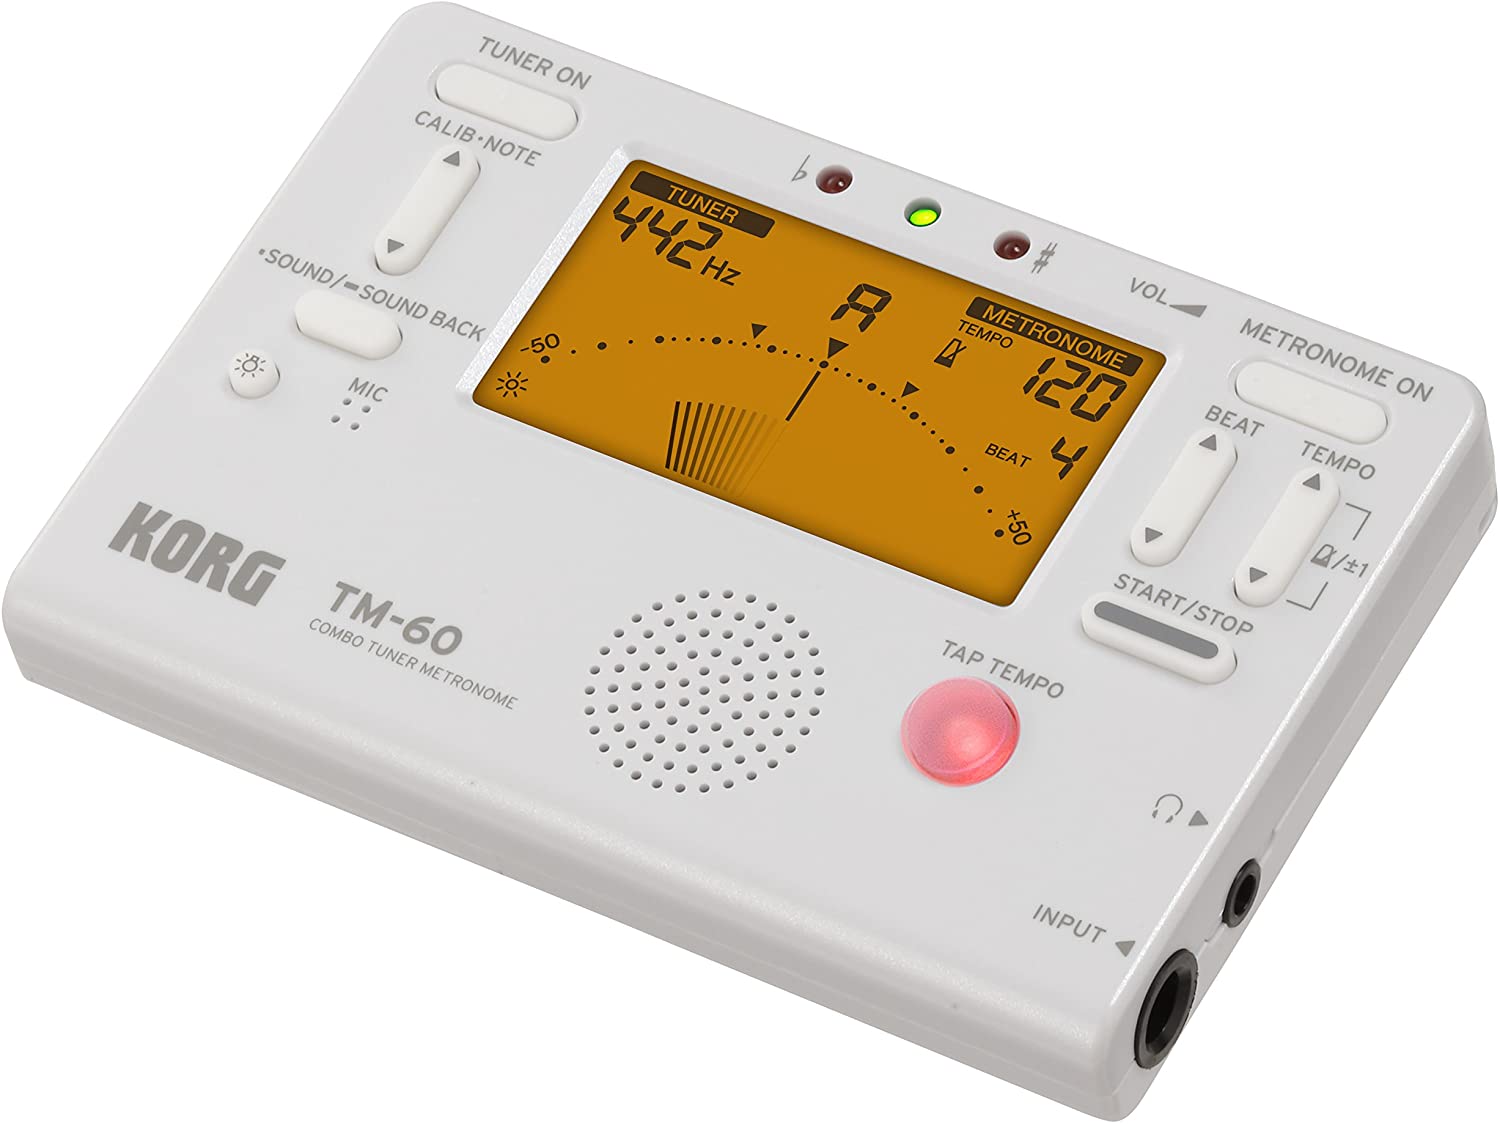 Korg TM-60BK White Combo Tuner Metronome